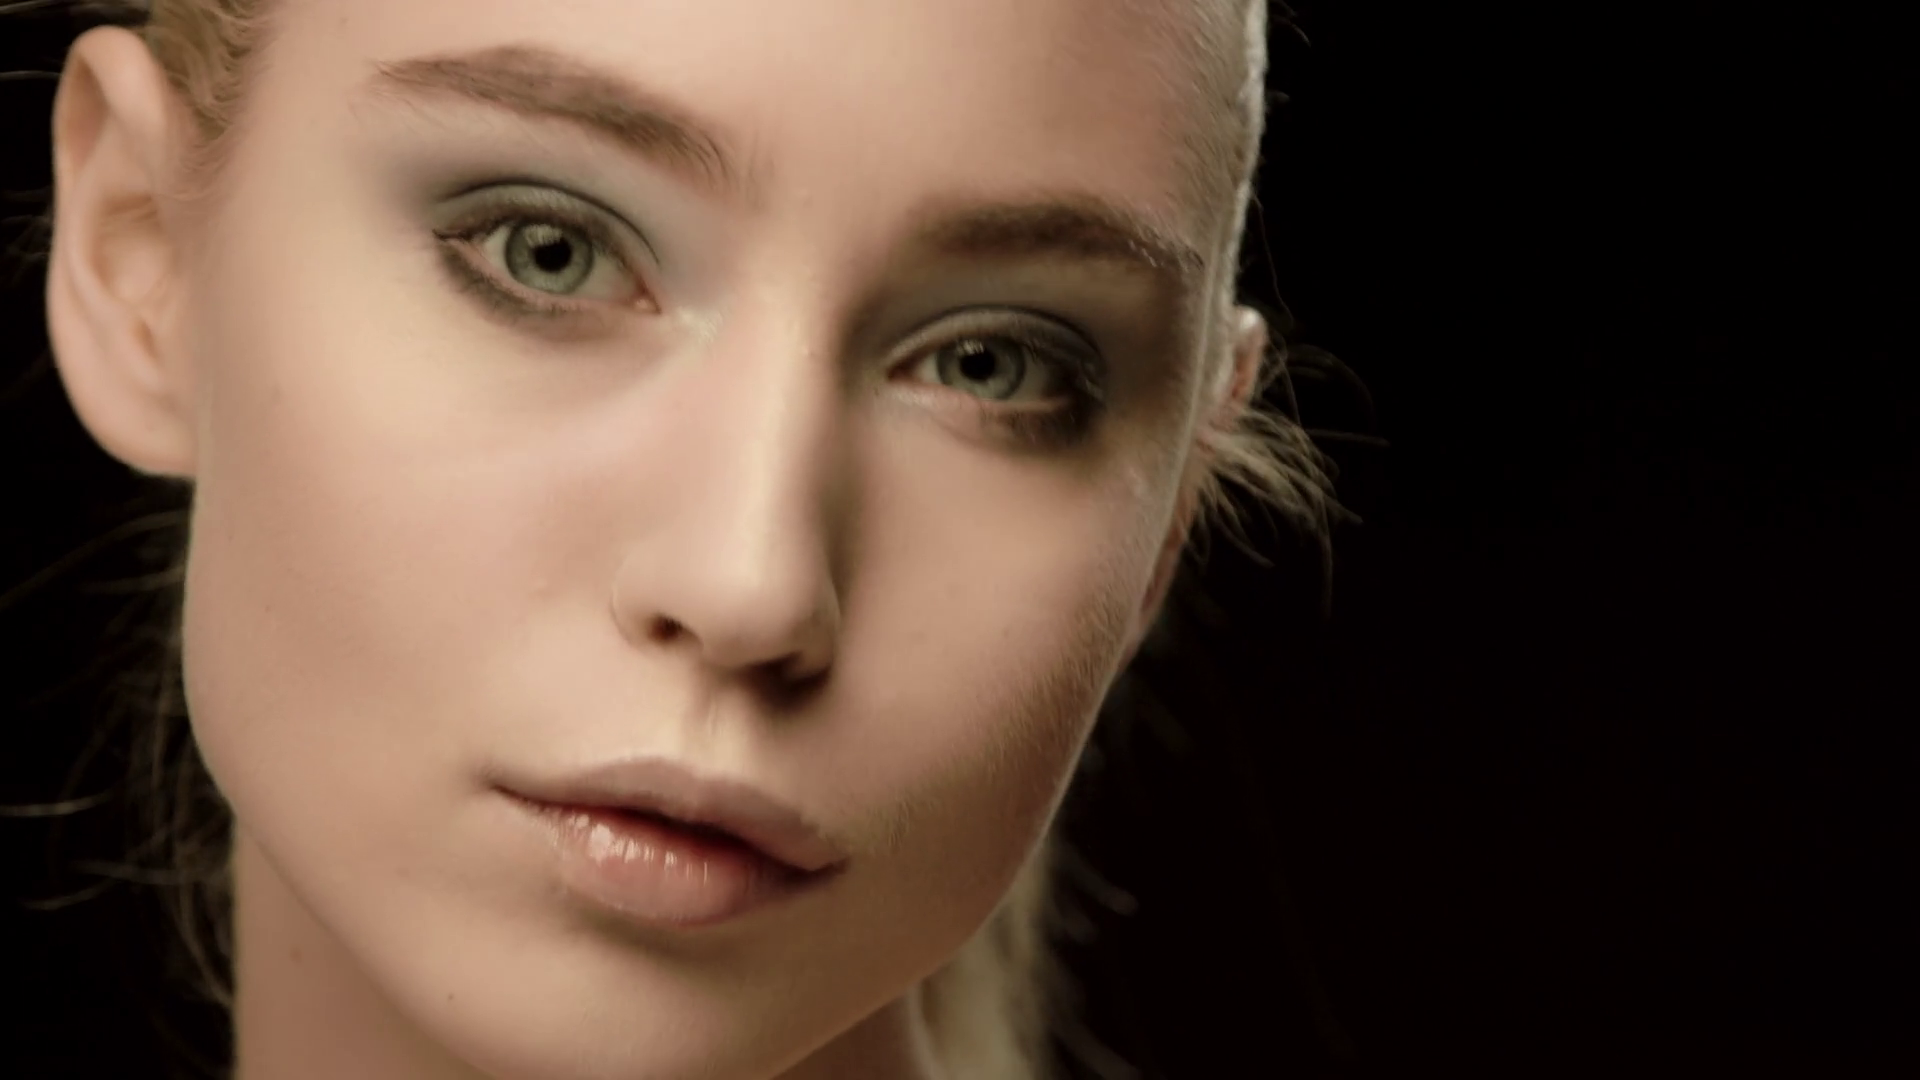 Ukrainian fashion model face closeup isolated on black background ...